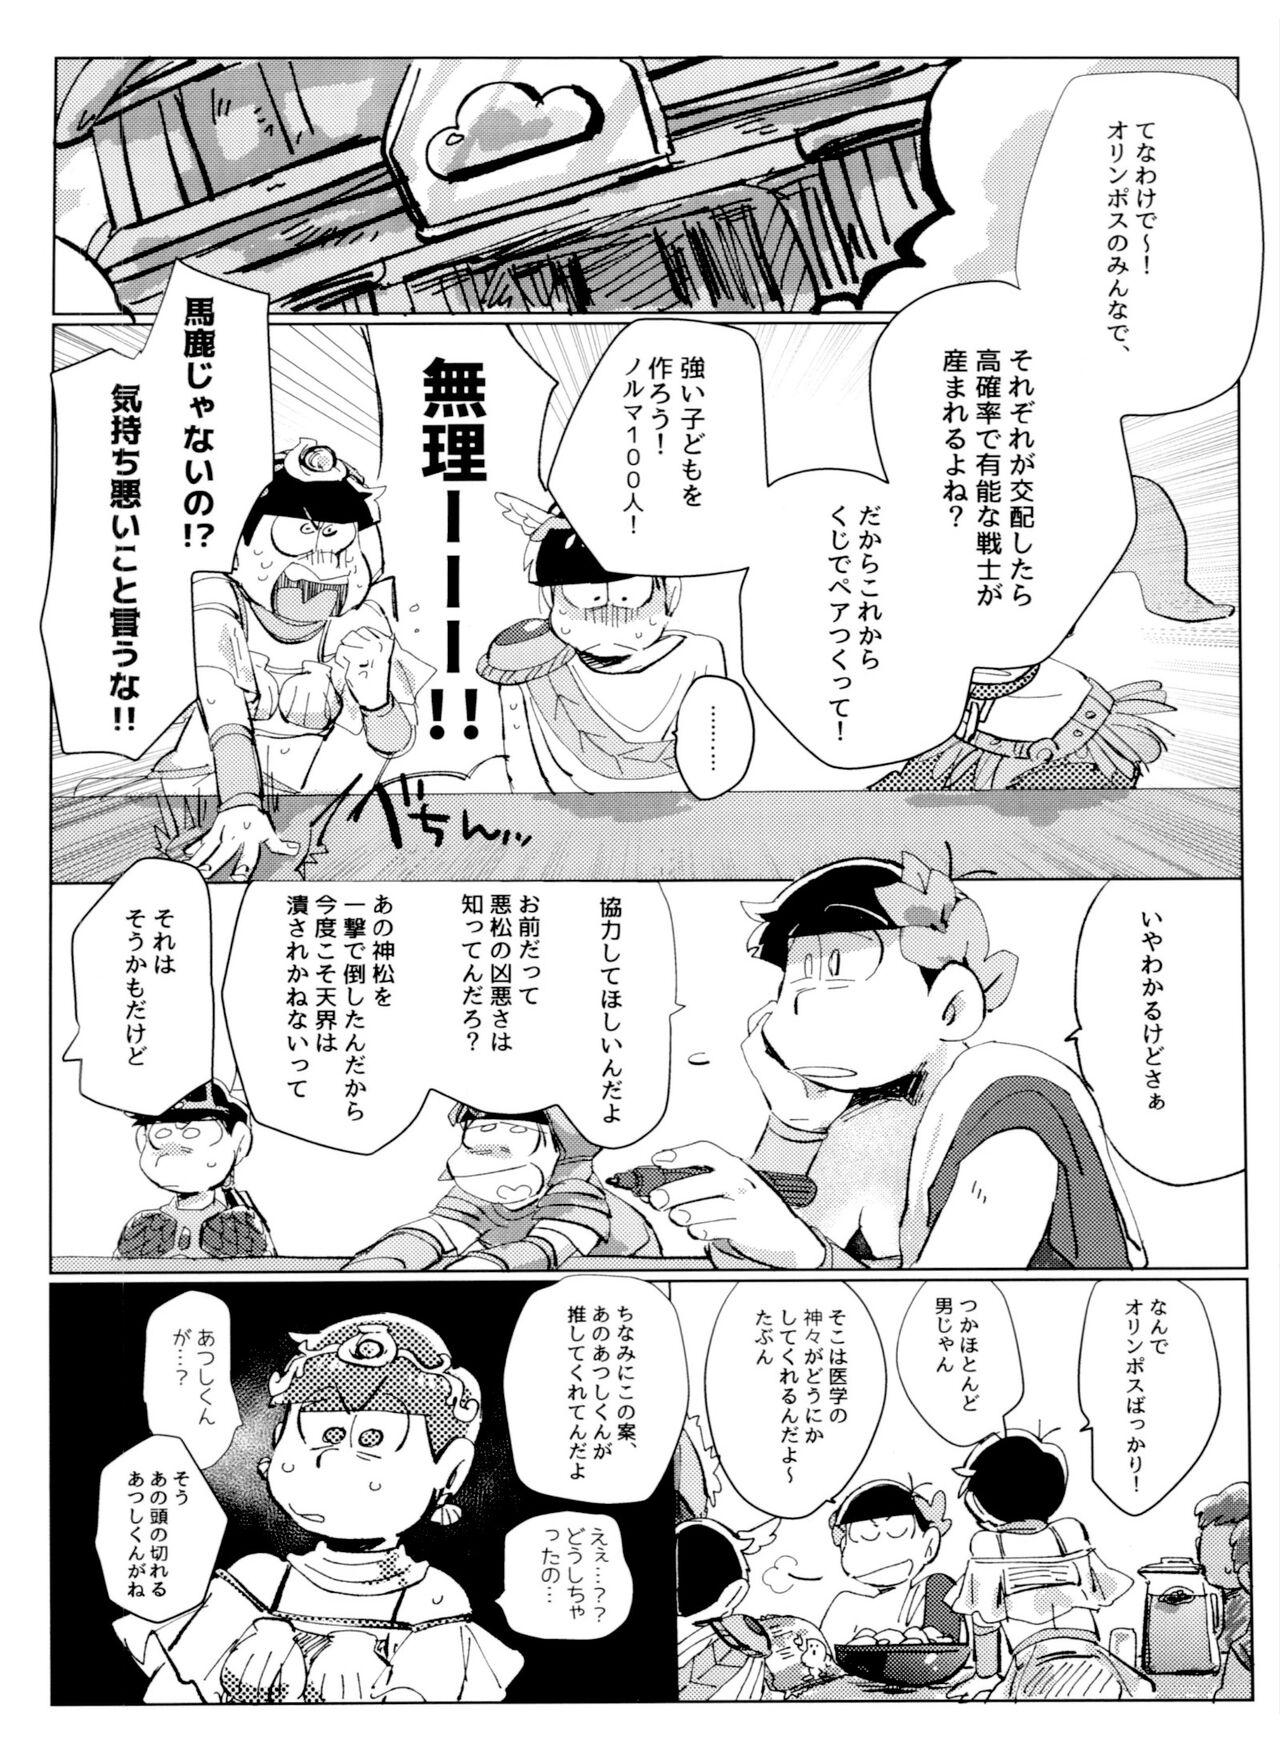 Foda [Handa gote sakka (handa)] Zeuapo-ko-tsukuri shinwa (Osomatsu-San) - Osomatsu-san Glory Hole - Page 5